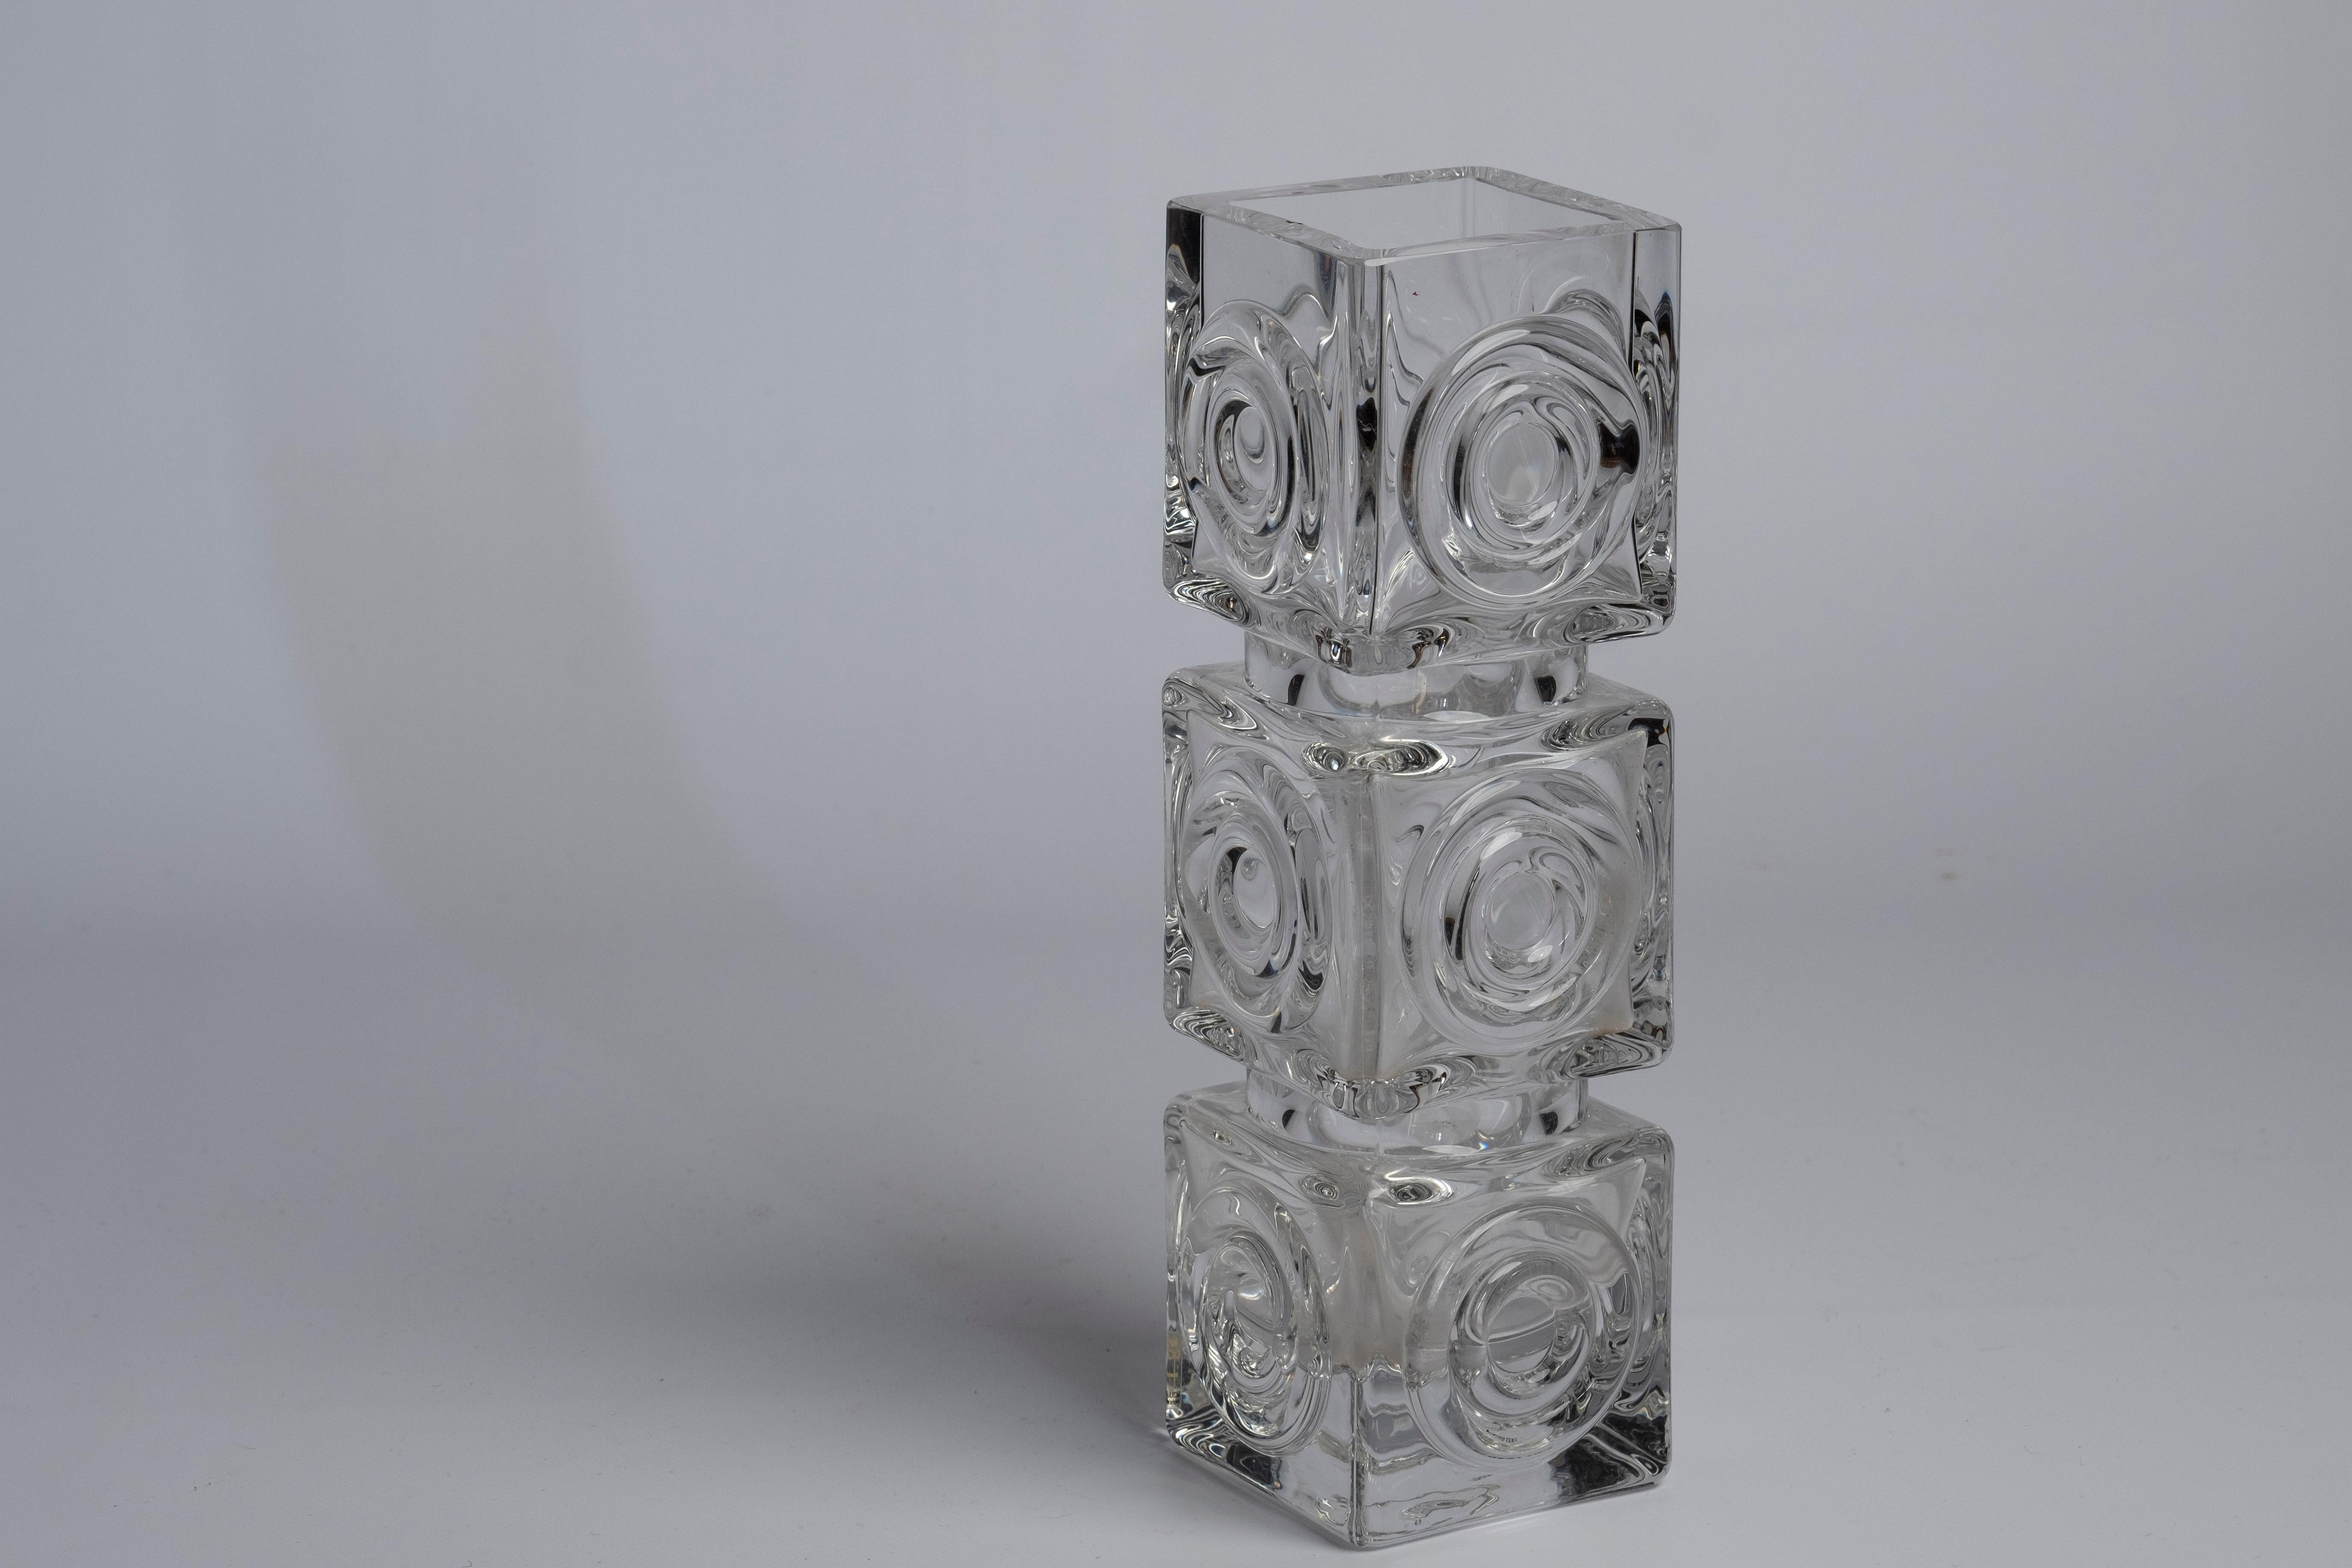 Ein Paar Glasvasen, entworfen von Bengt Edenfalk Skrufs Glasbruk, Schweden, 1960er Jahre.

Abmessungen:
Größere Vase 26,5 cm hoch und 8 cm breit/tief
Kleinere Vase 21 cm hoch und 6,5 cm breit/tief.